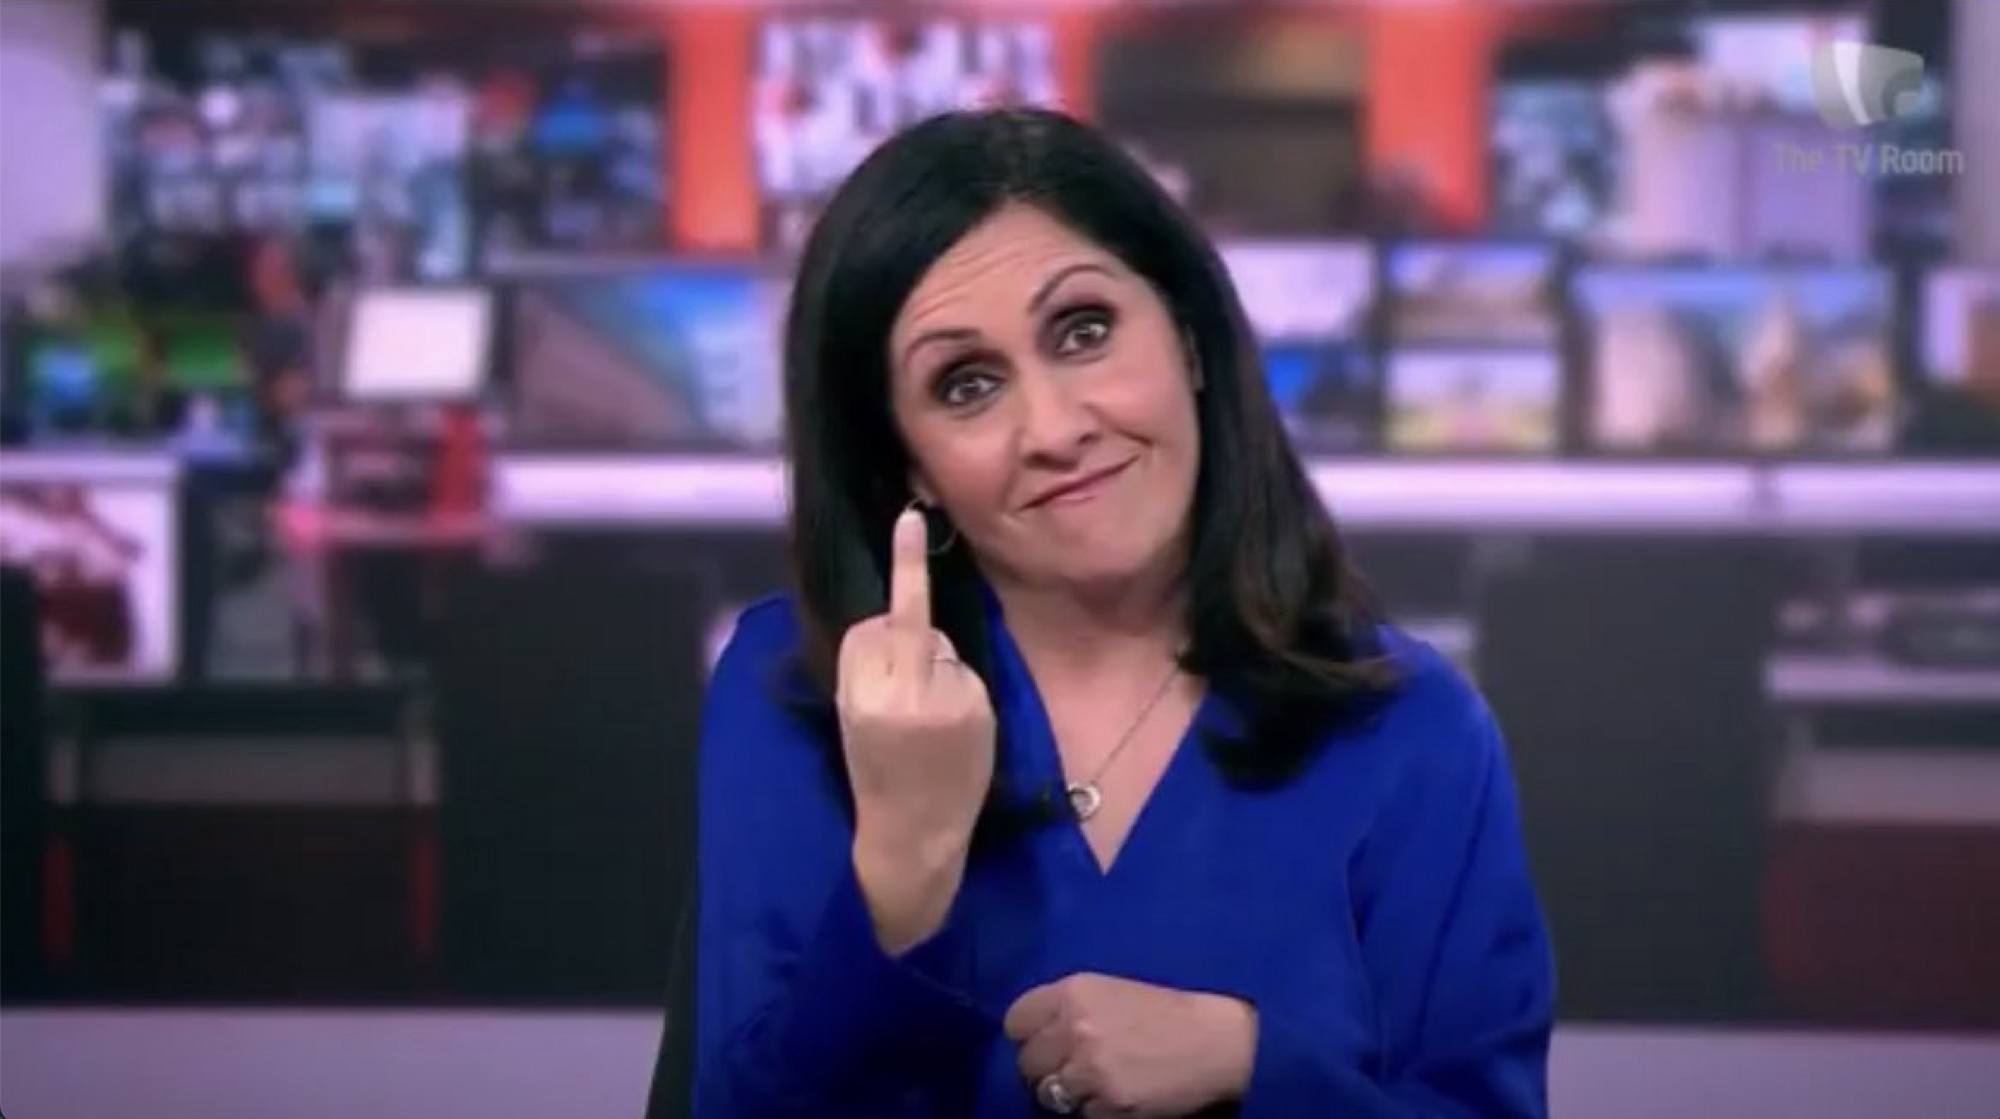 Телеведущая BBC показала средний палец в прямом эфире. Видео